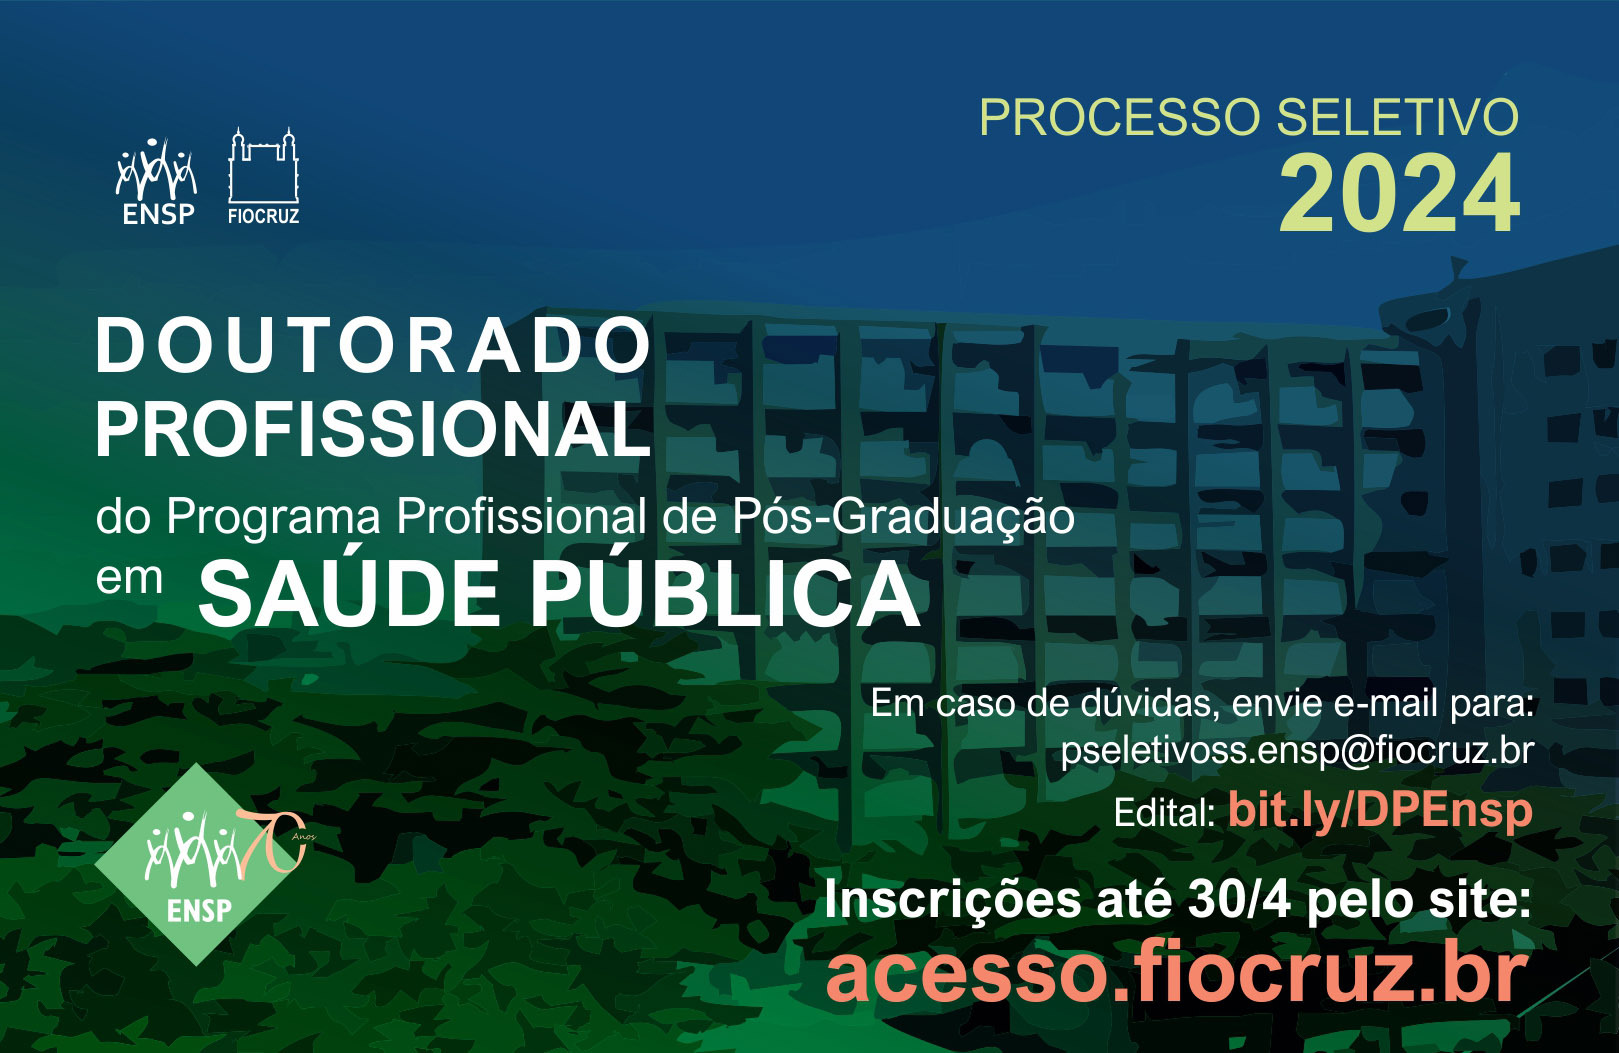 Escola Nacional de Saúde Pública da Fiocruz recebe inscrições para primeiro Doutorado Profissional